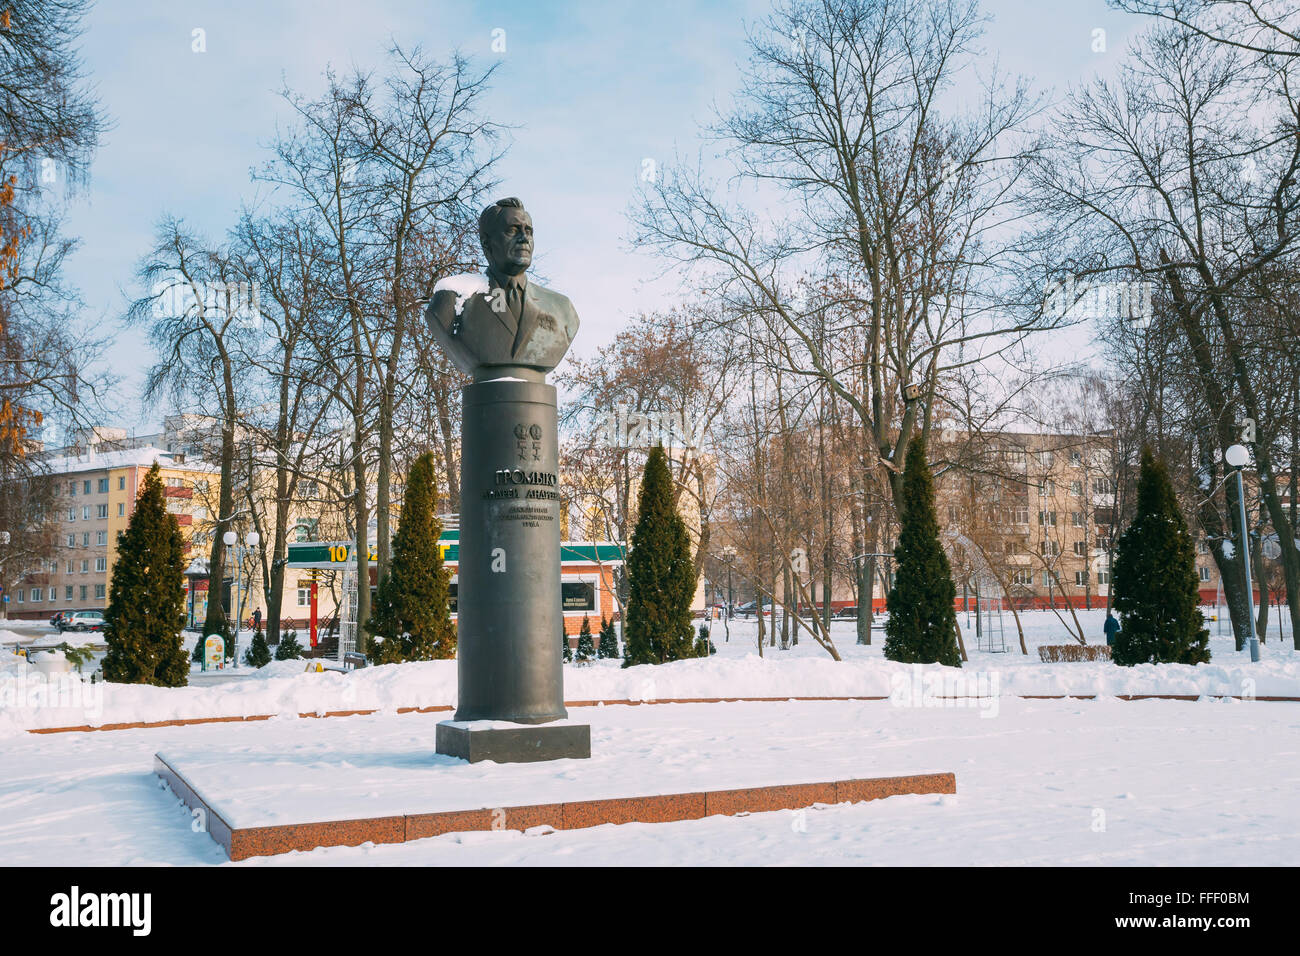 Gomel, Bélarus - 23 janvier 2016 : Monument de Gromyko à Gomel, au Bélarus. Andrei Gromyko (1909-1989) était un homme d'État soviétique duri Banque D'Images